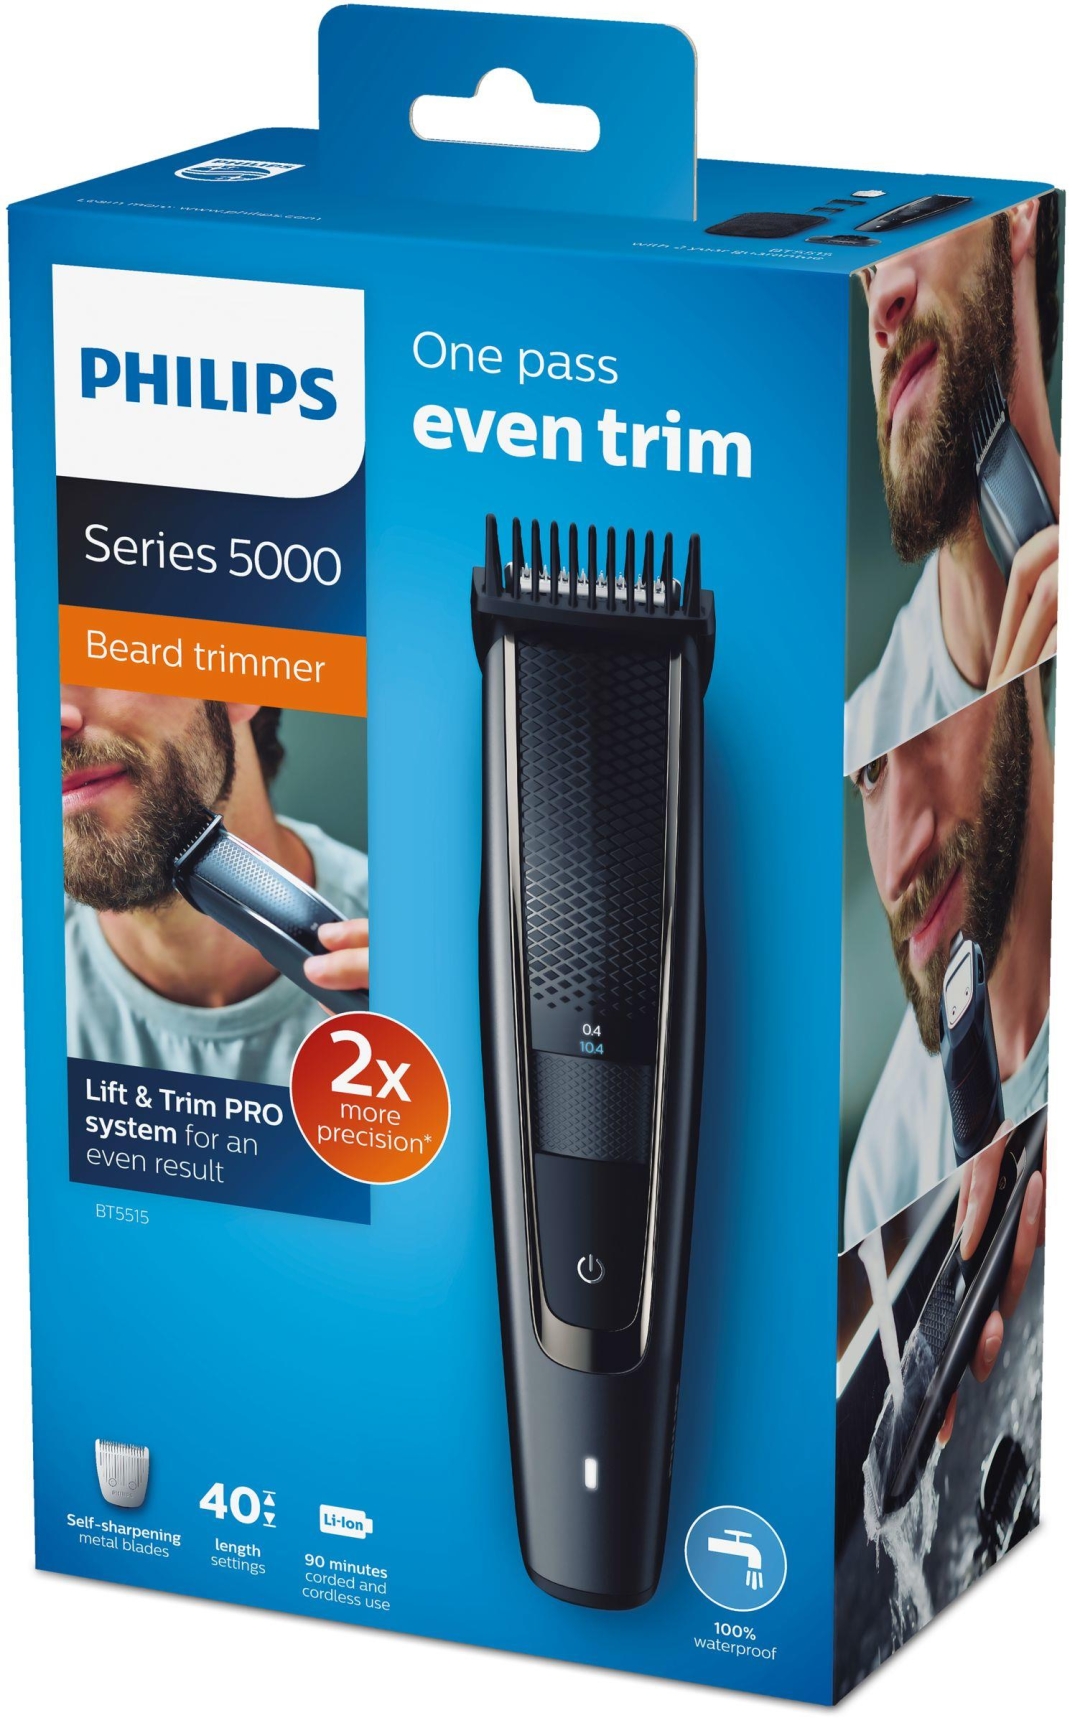 Philips машинка для бороды: рейтинг 2020 года моделей для бороды, усов, носа и ушей, характеристики и отзывы